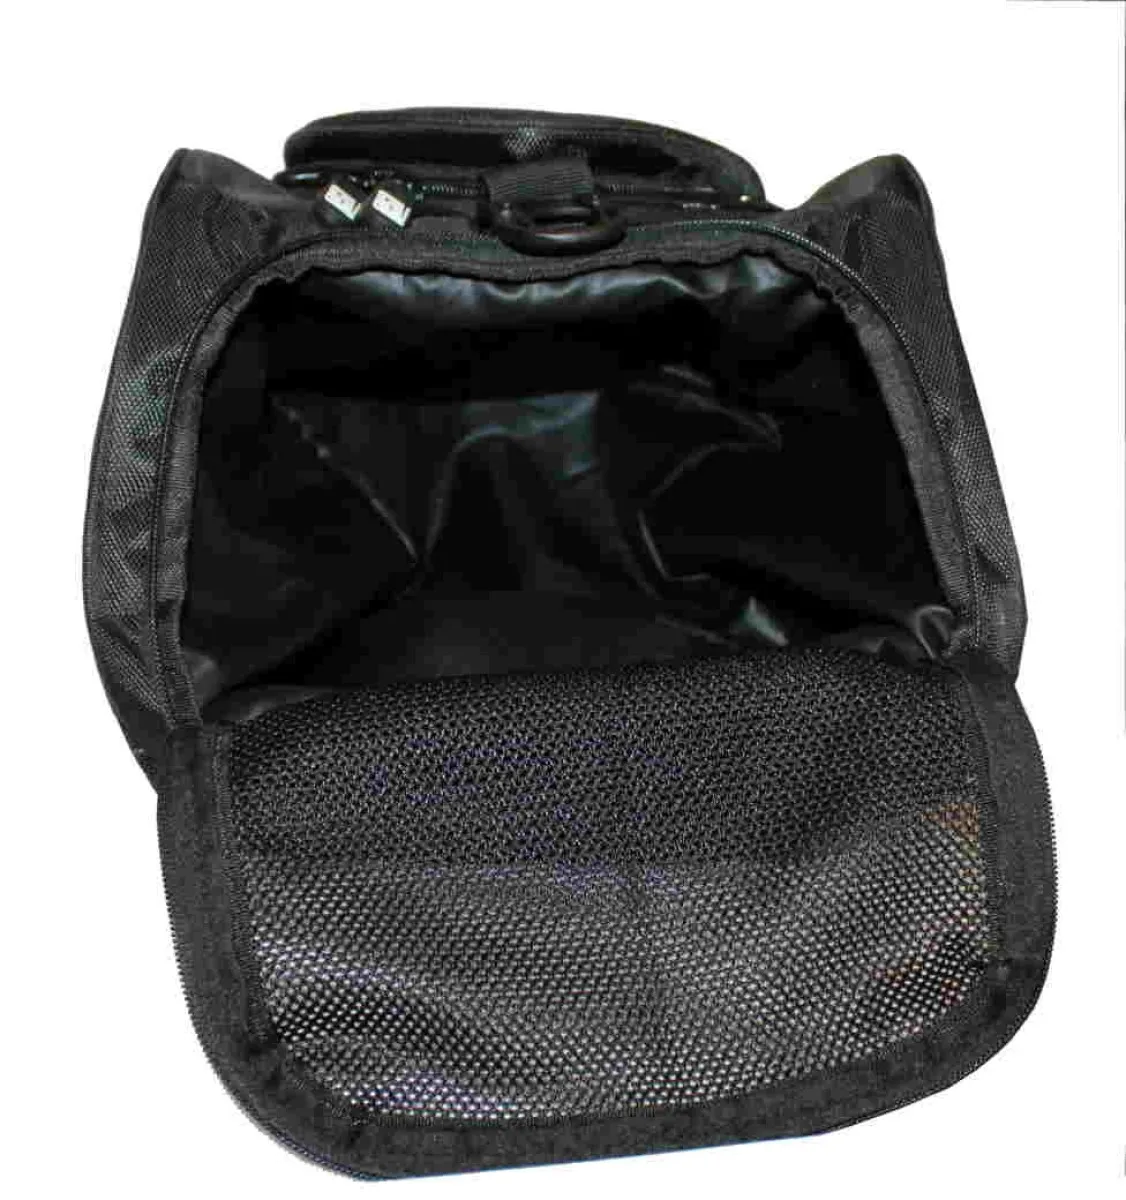 Sac de sport avec fonction sac à dos en noir avec empiècements latéraux turquoises